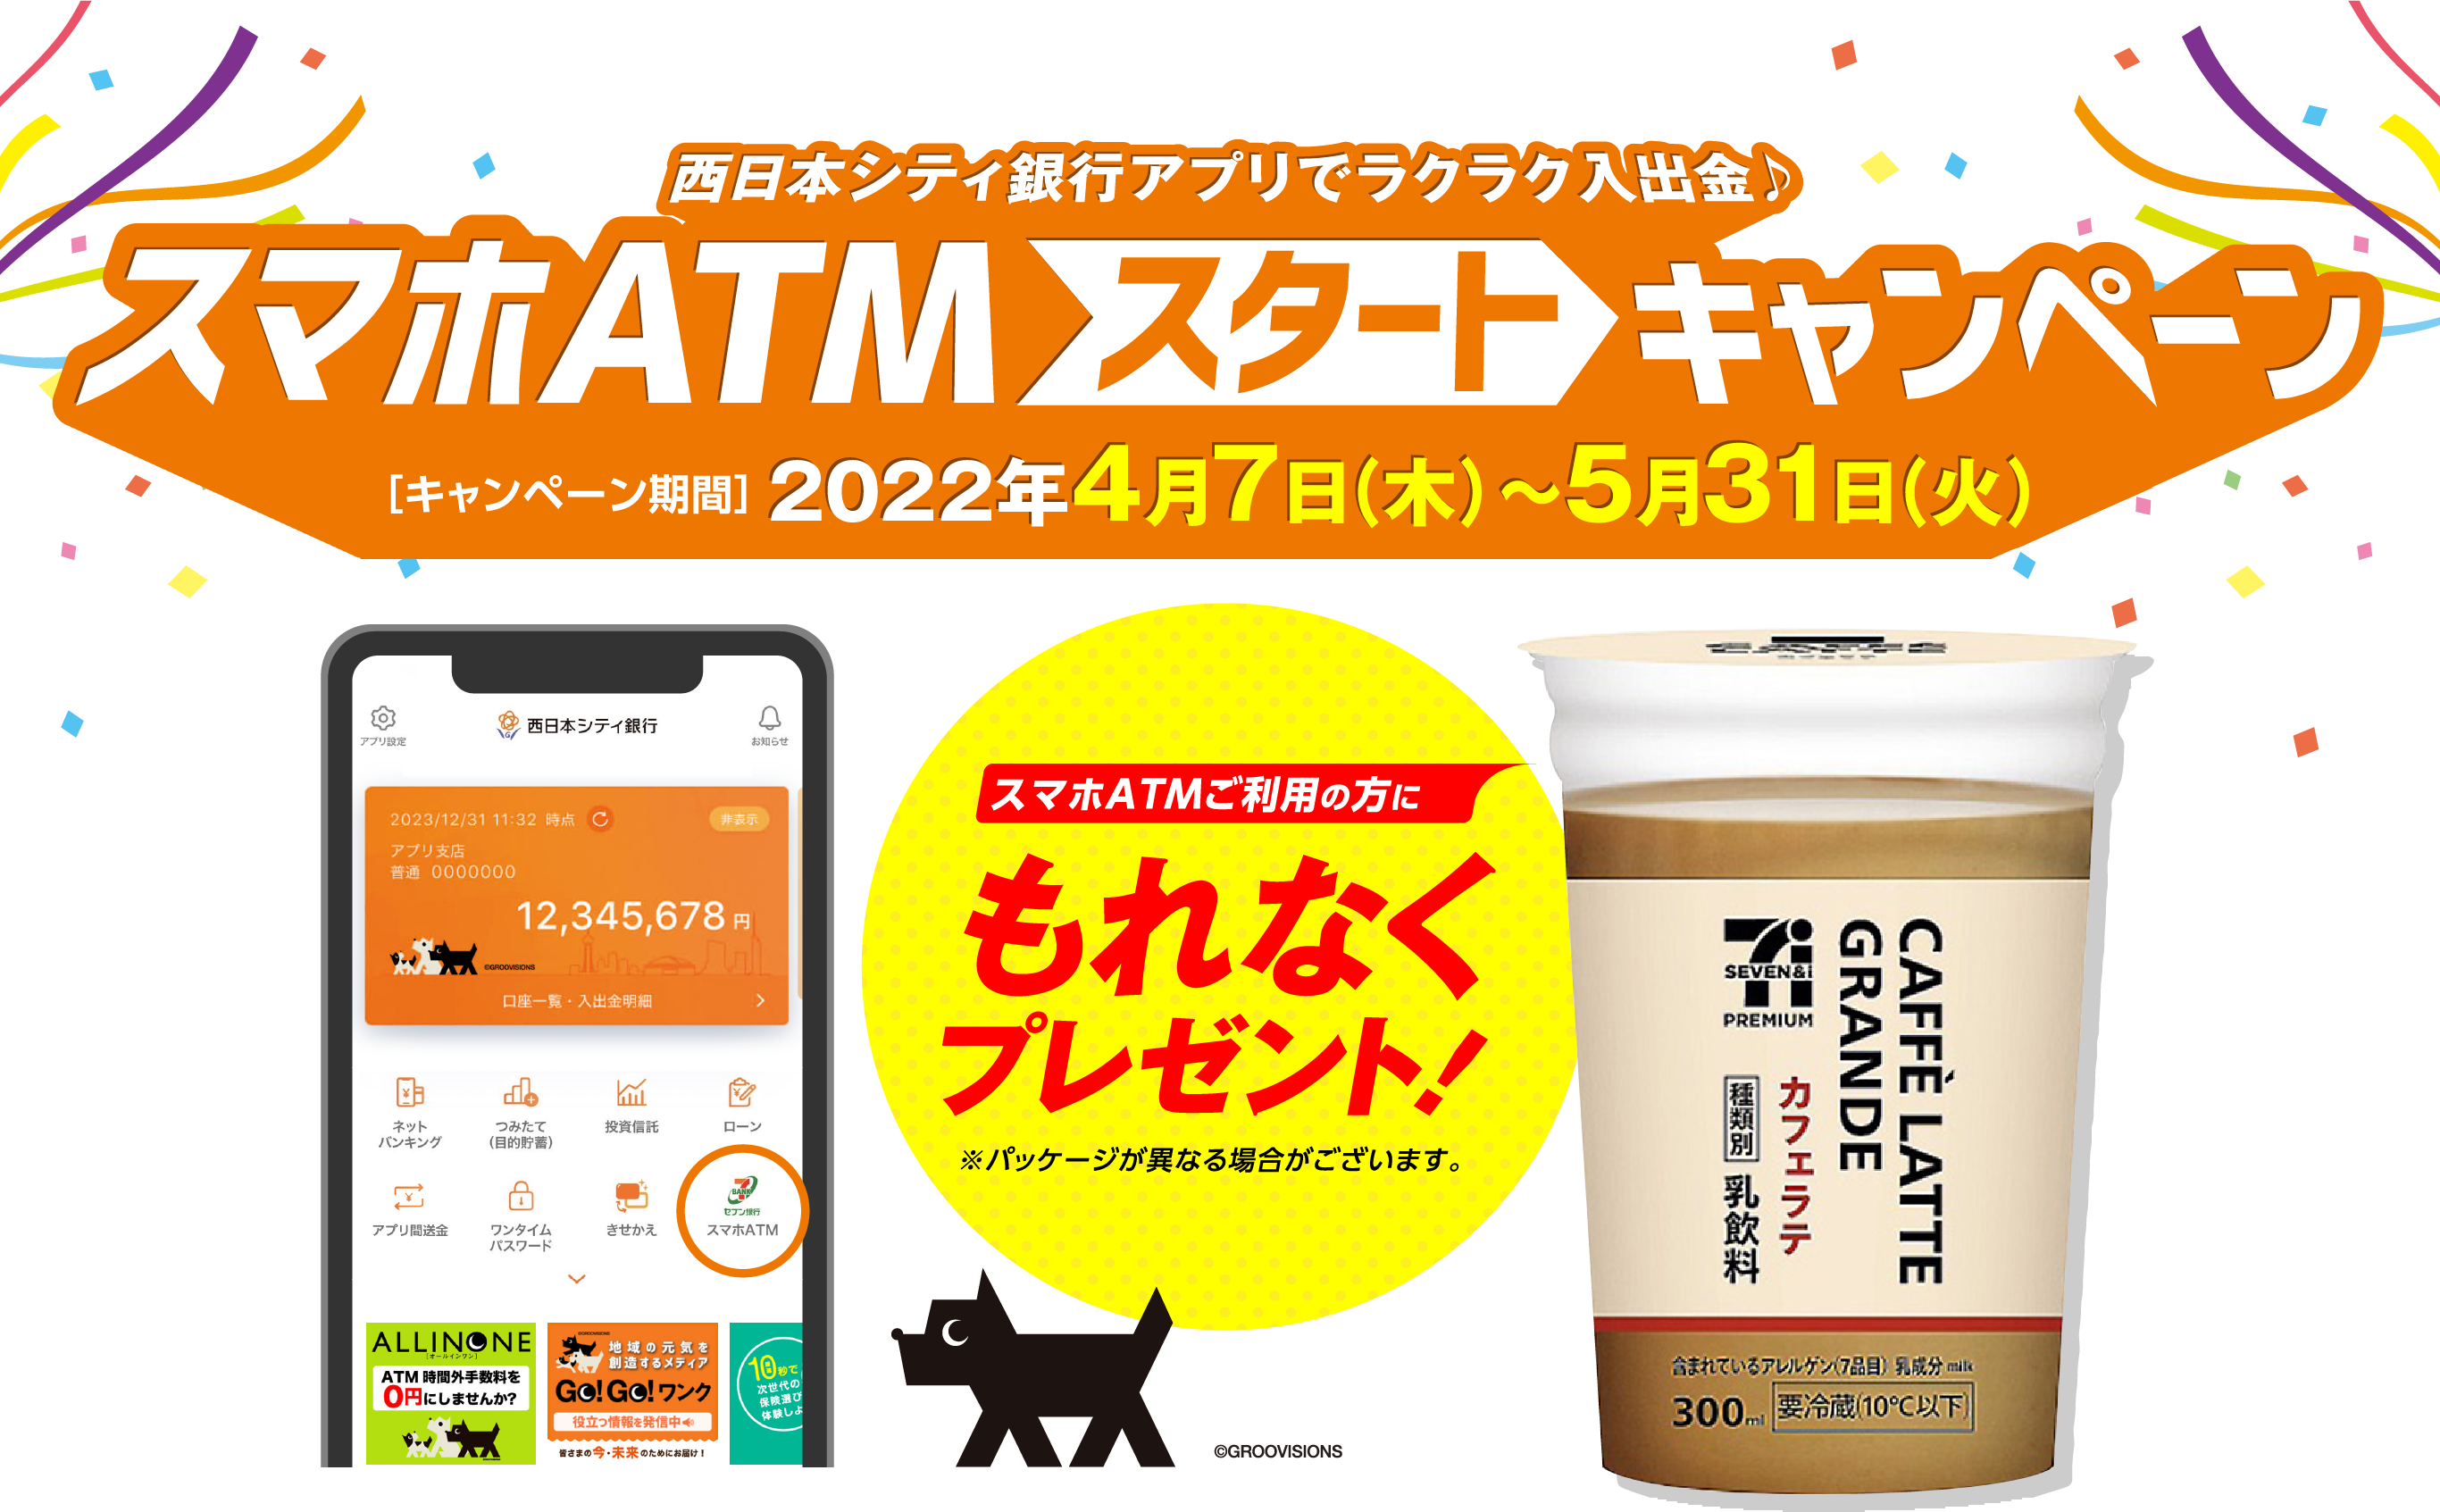 西日本シティ銀行アプリでラクラク入出金♪ スマホATMスタートキャンペーン